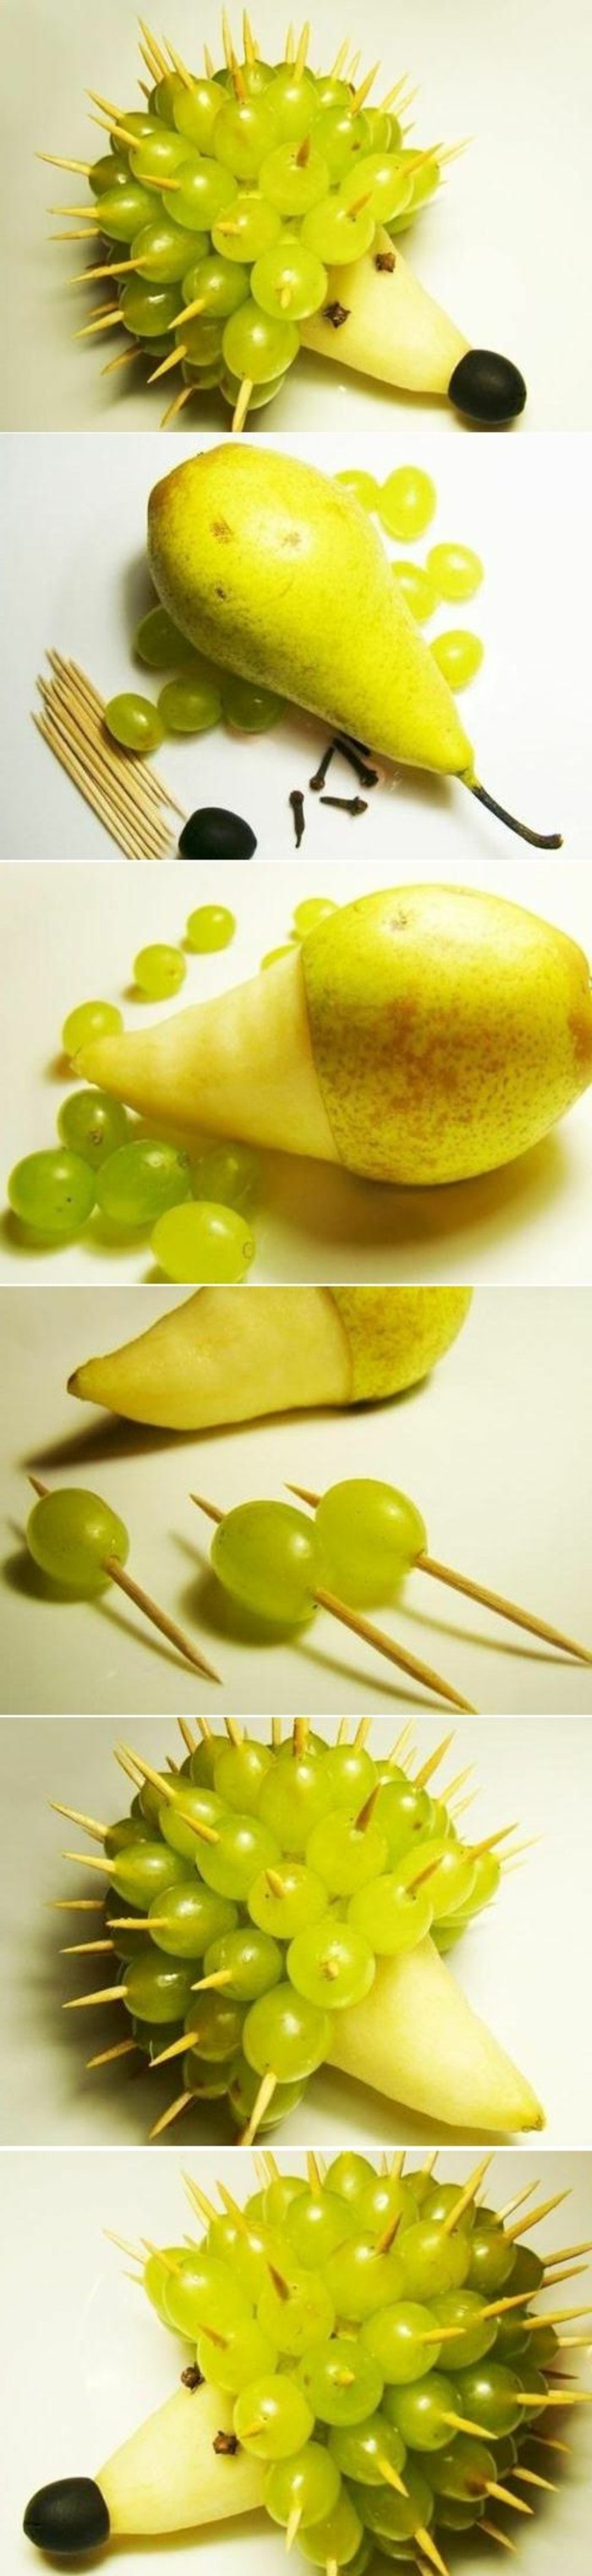 deco-fruit-poires-et-raisins-en-sculpture-sculpter-et-modeler-avec-fruits